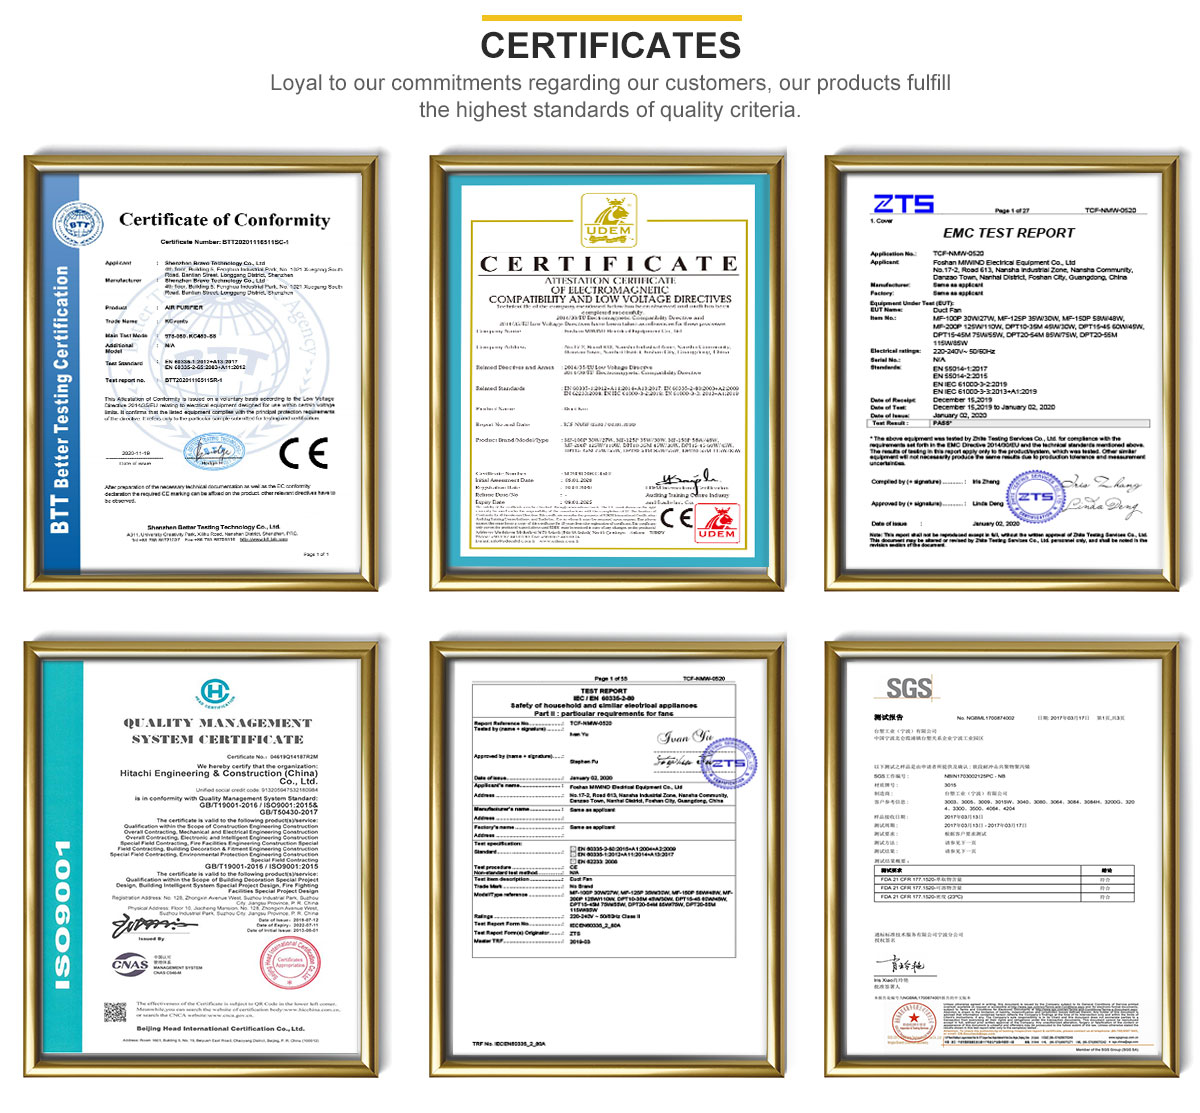 Kcvants certificate